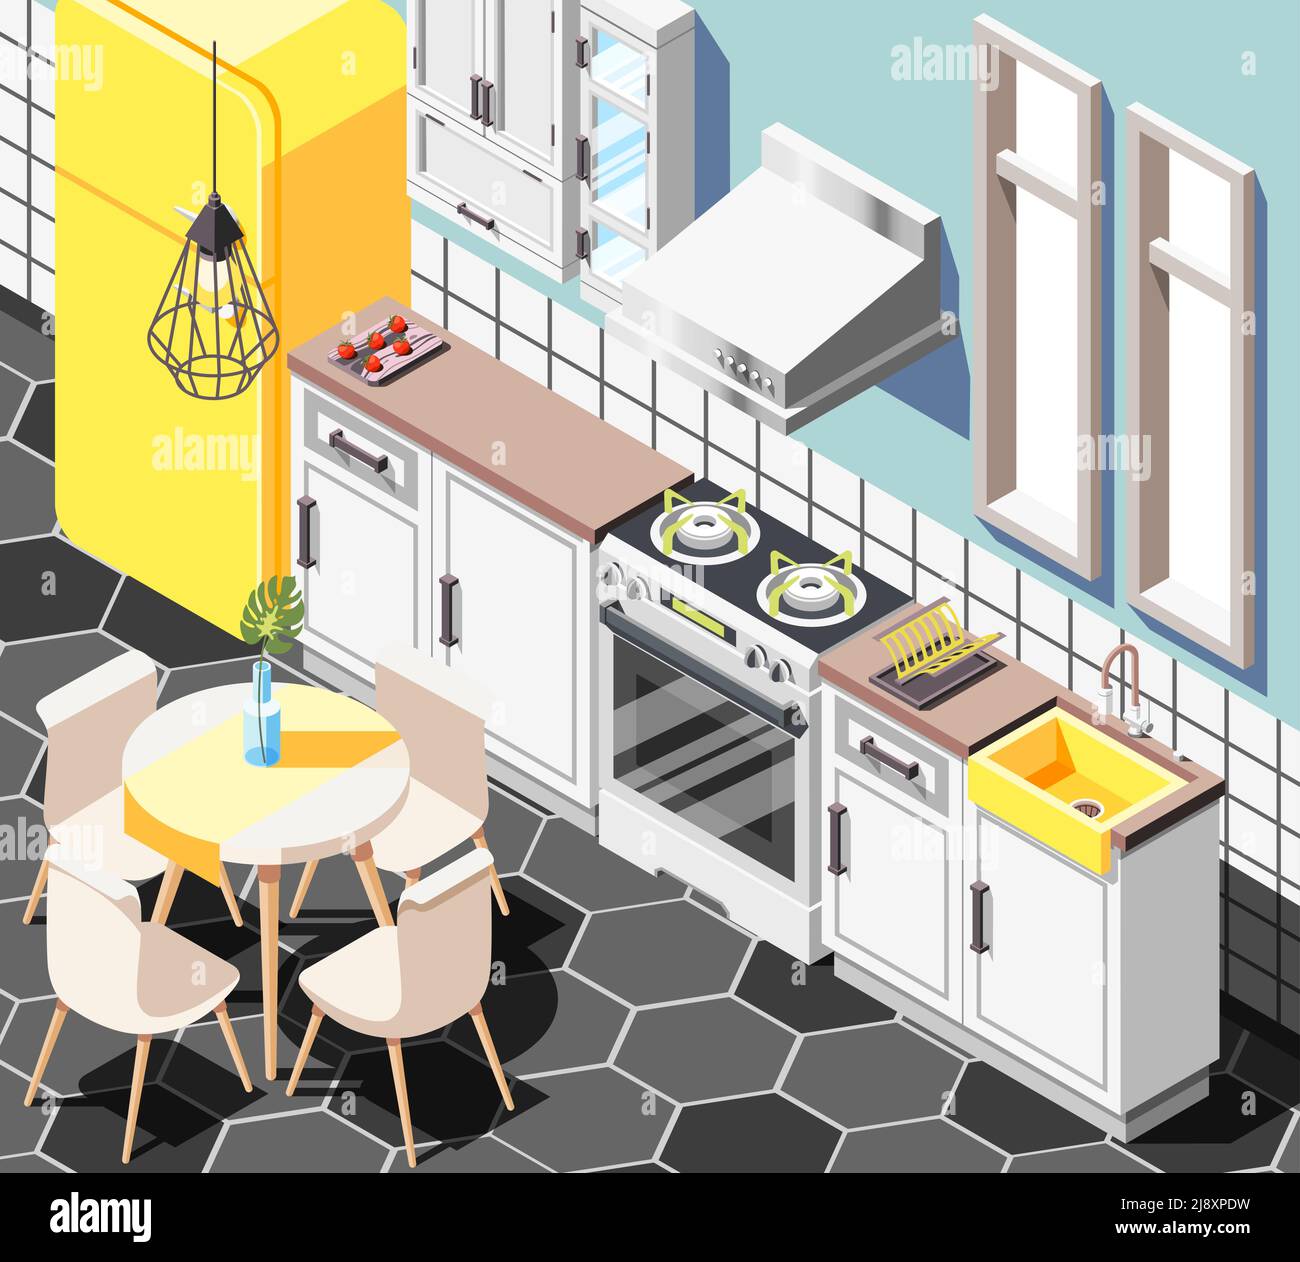 Loft Innenraum isometrischen Hintergrund mit Innenansicht der modernen Küche Mit Möbel Schränke Kühlschrank und Tisch Vektor Illustration Stock Vektor